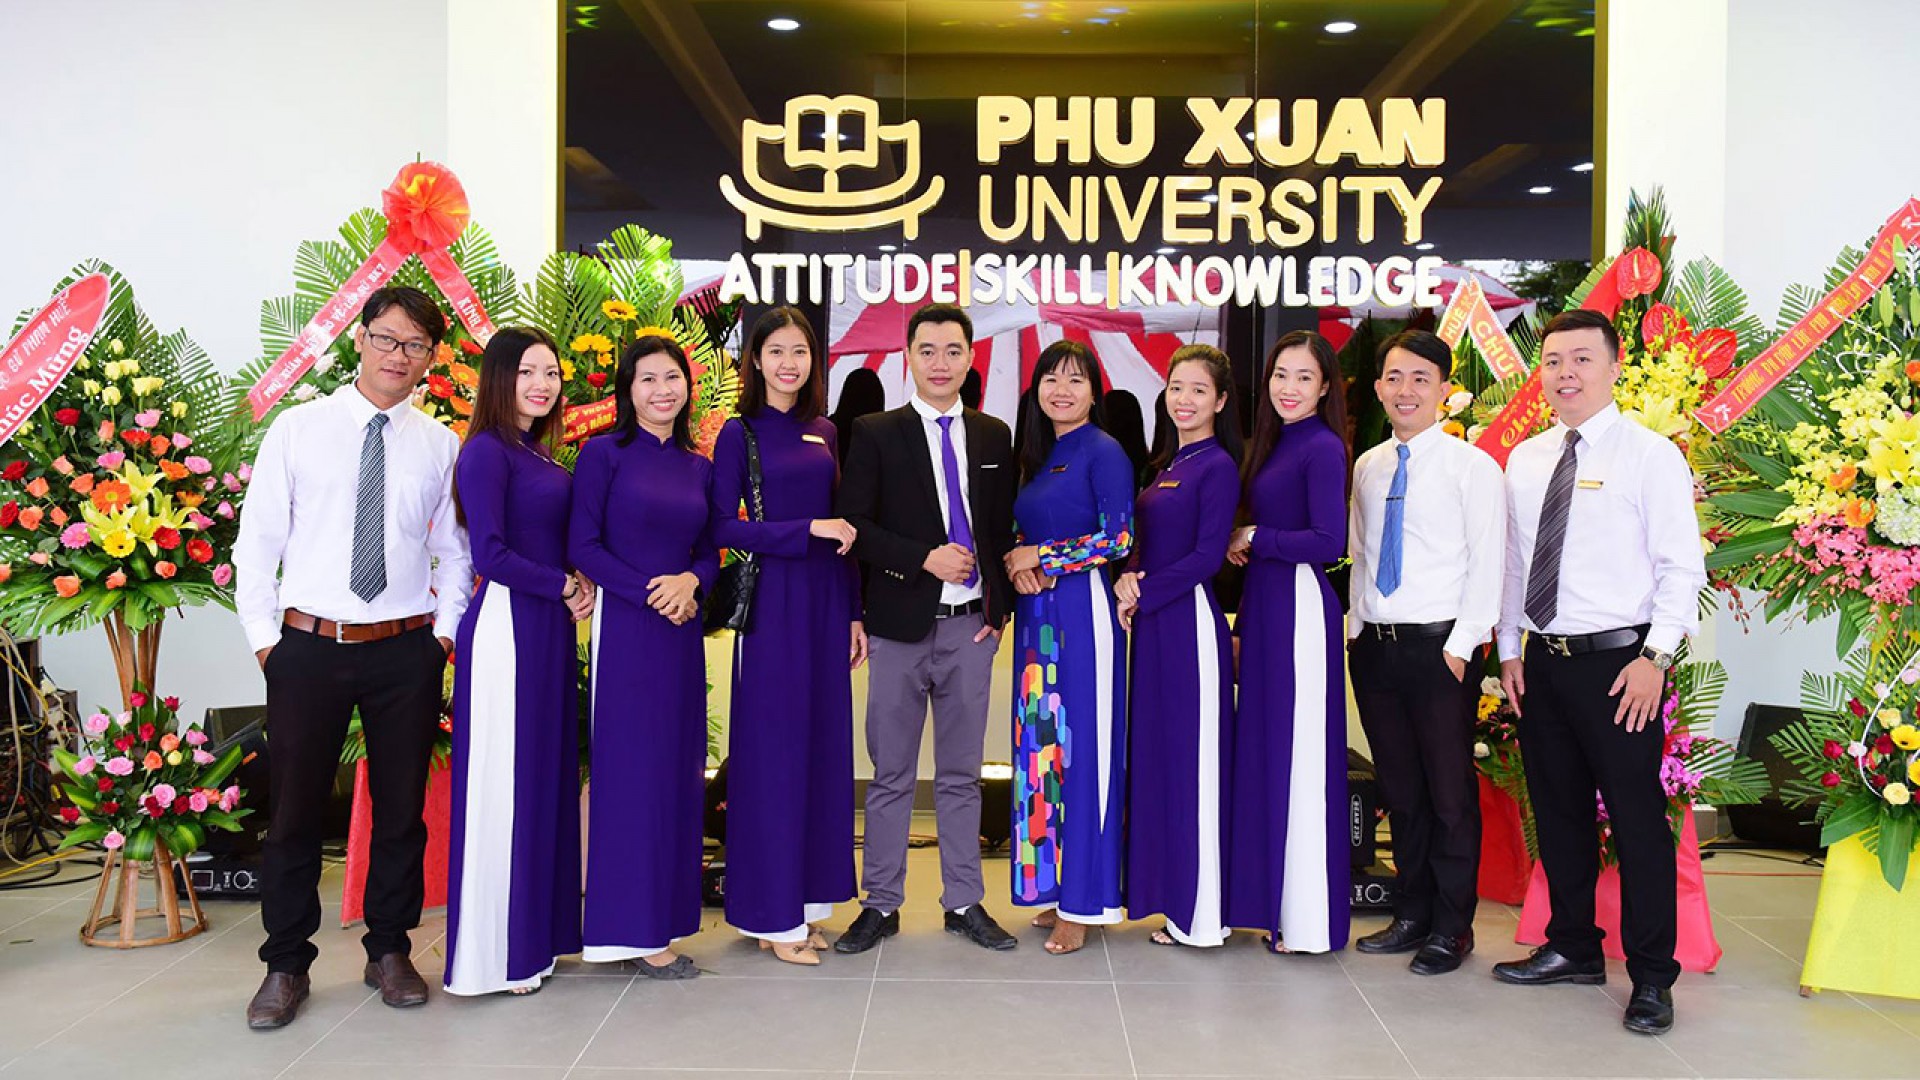 Đội ngũ giảng viên chất lượng: Niềm tự hào của Đại học Phú Xuân